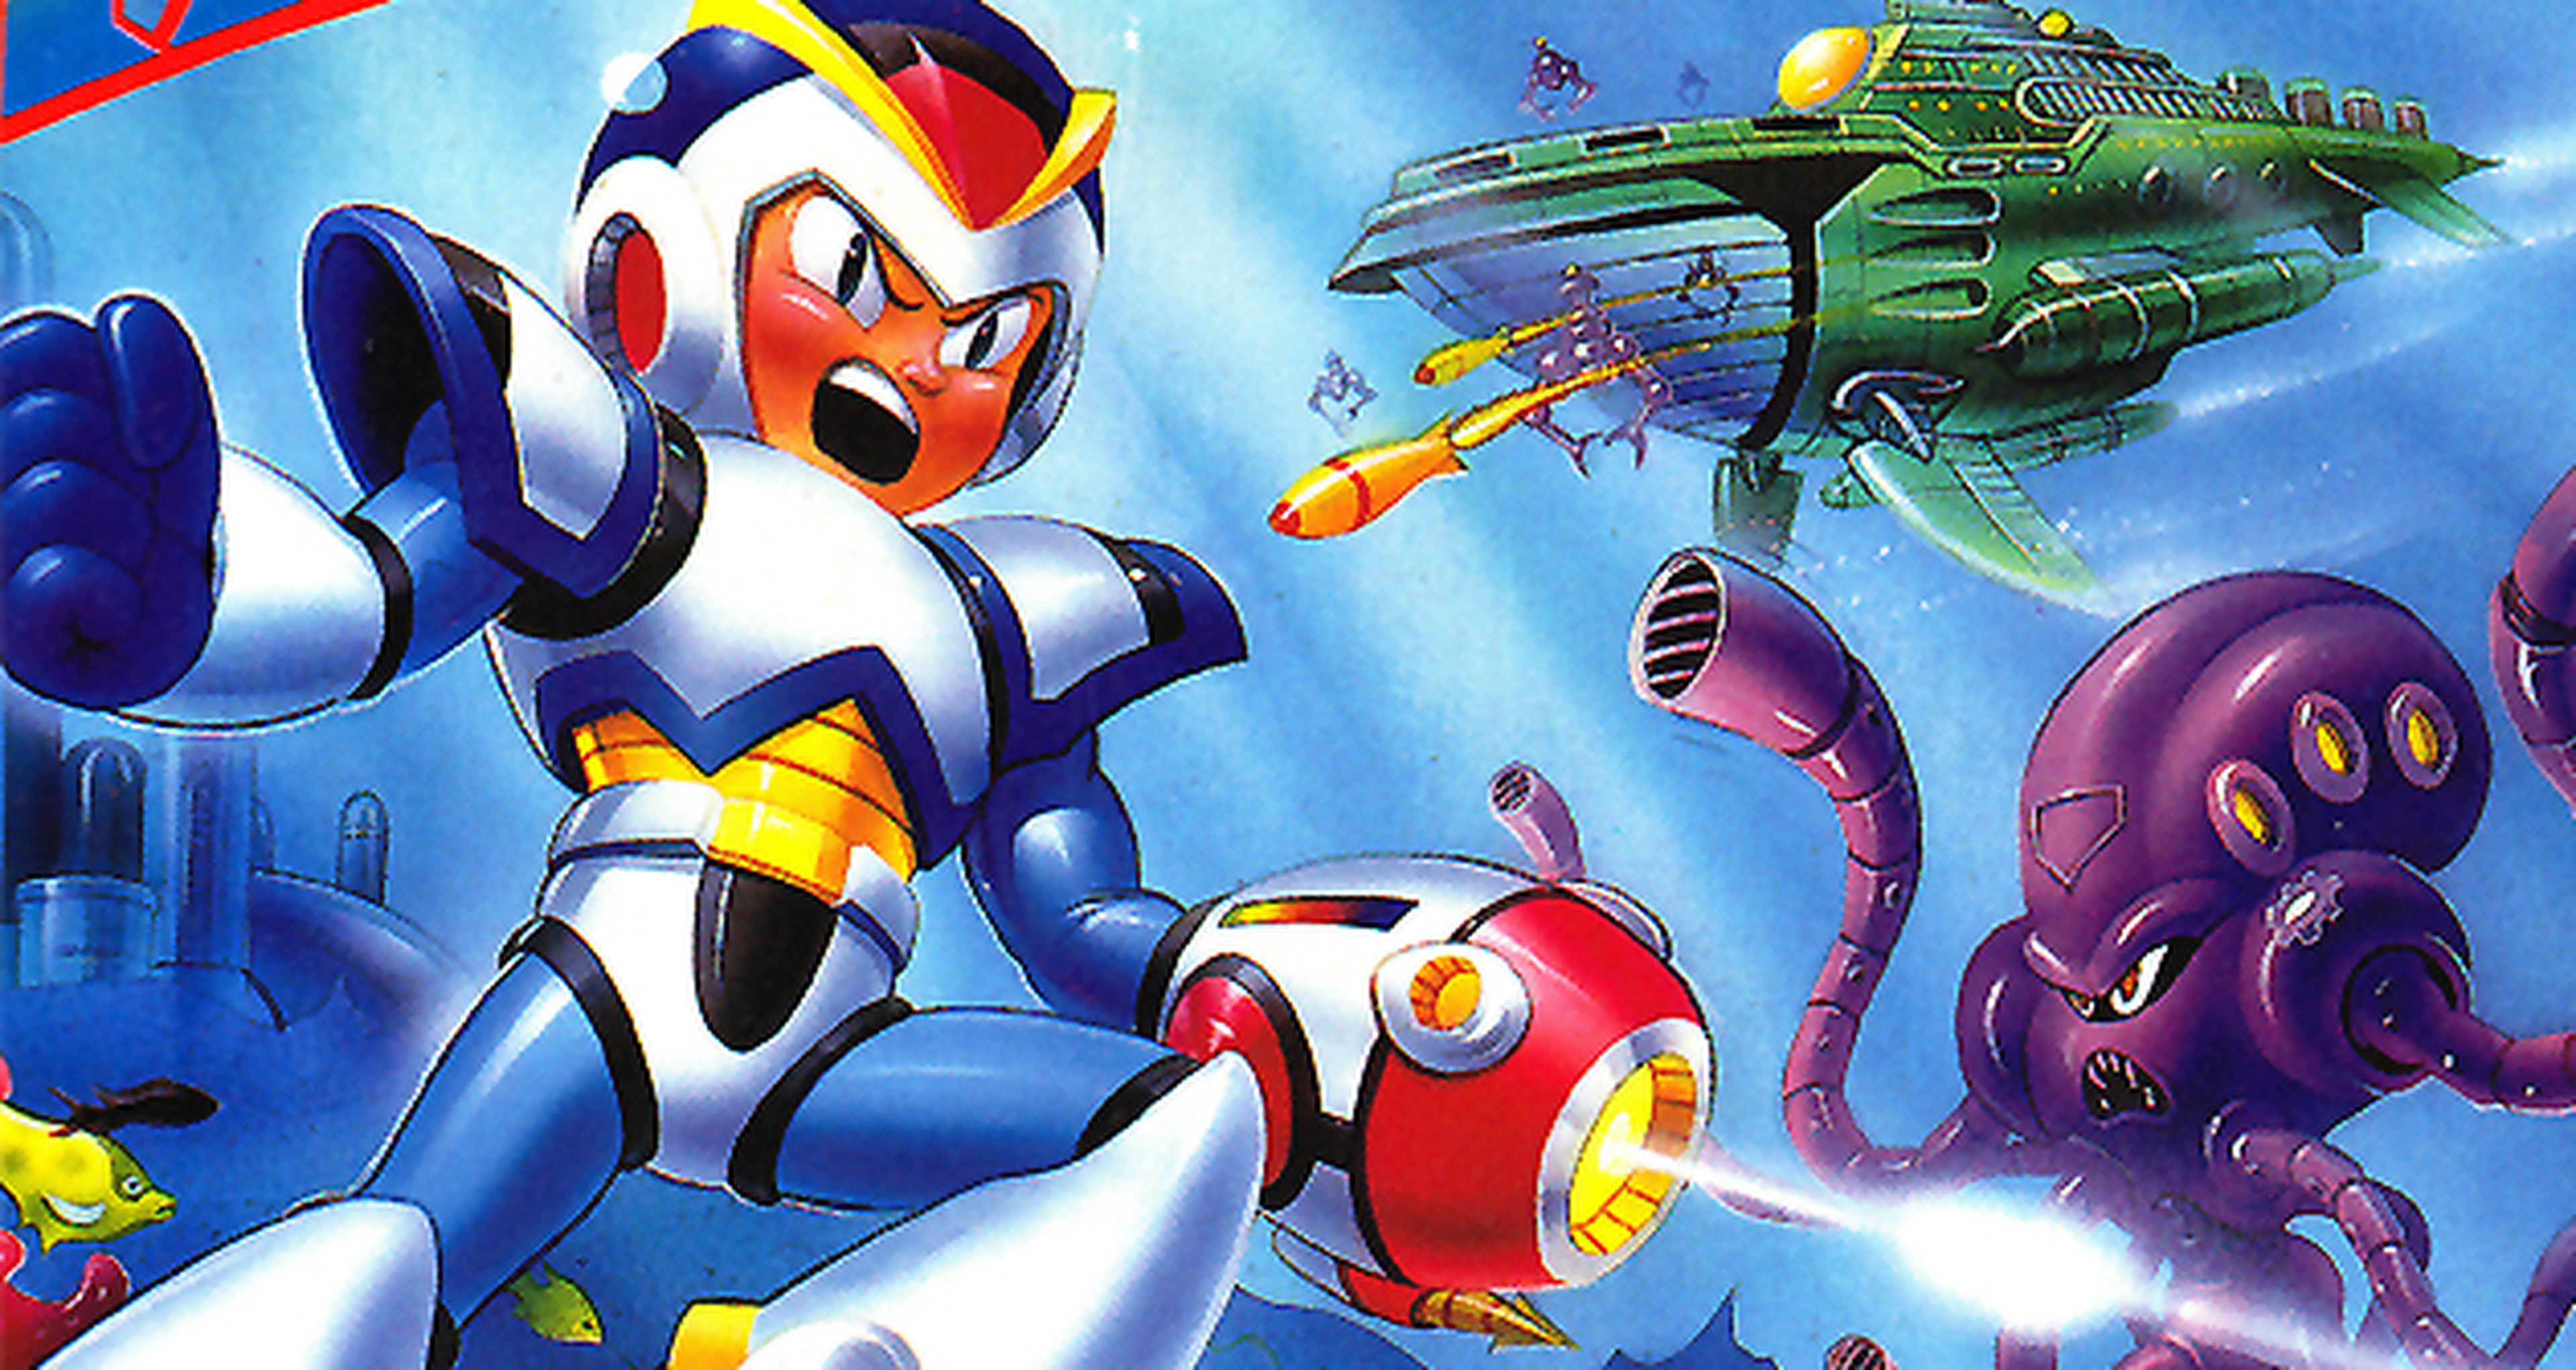 Hobby Consolas, hace 20 años: Mega Man X